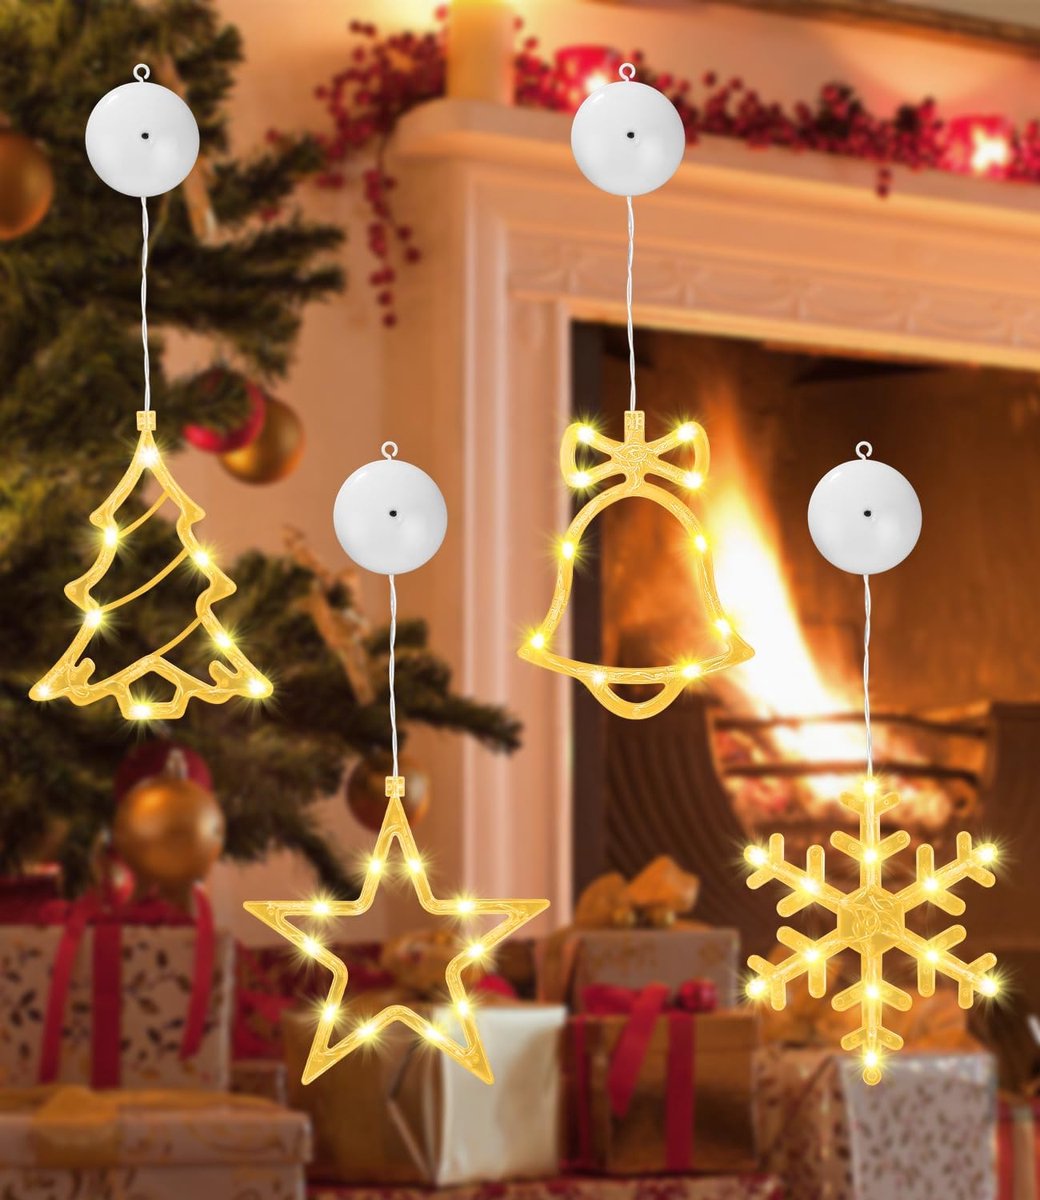 LED Kerstverlichting, Set van 4, 10 LED Raamlichtslingers, Batterij-aangedreven met Zuignappen, Perfect voor Kerst, Balkon, Feest, Bruiloft